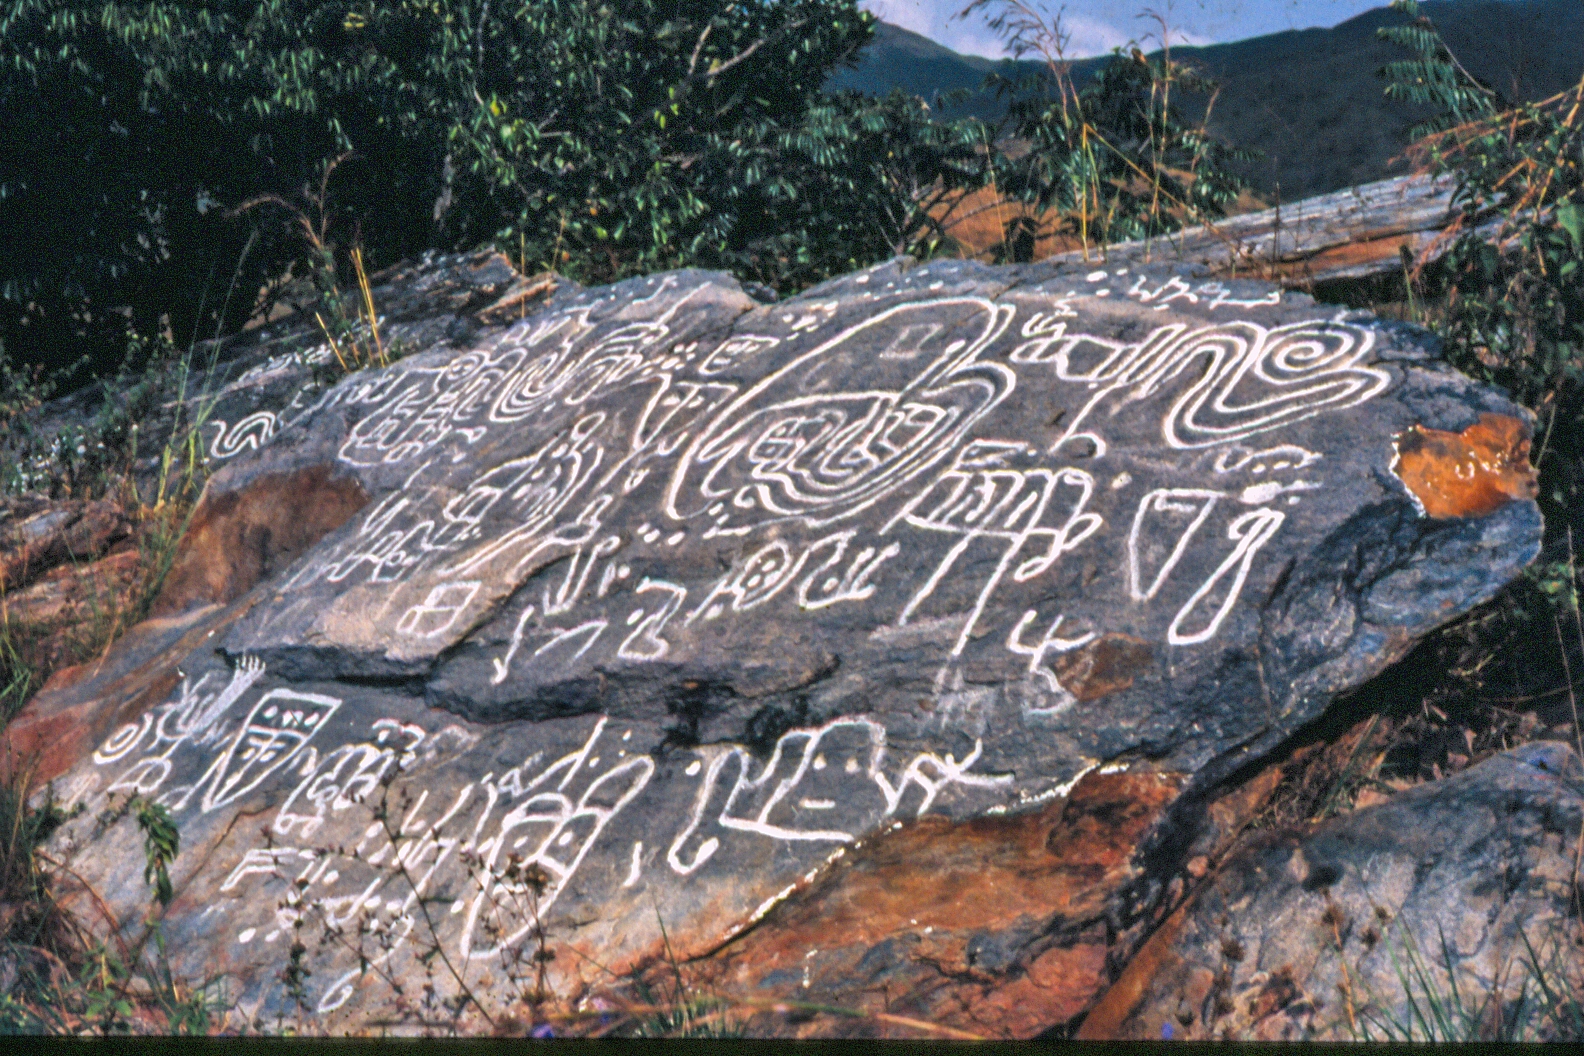 Petroglifos Vigirima acn